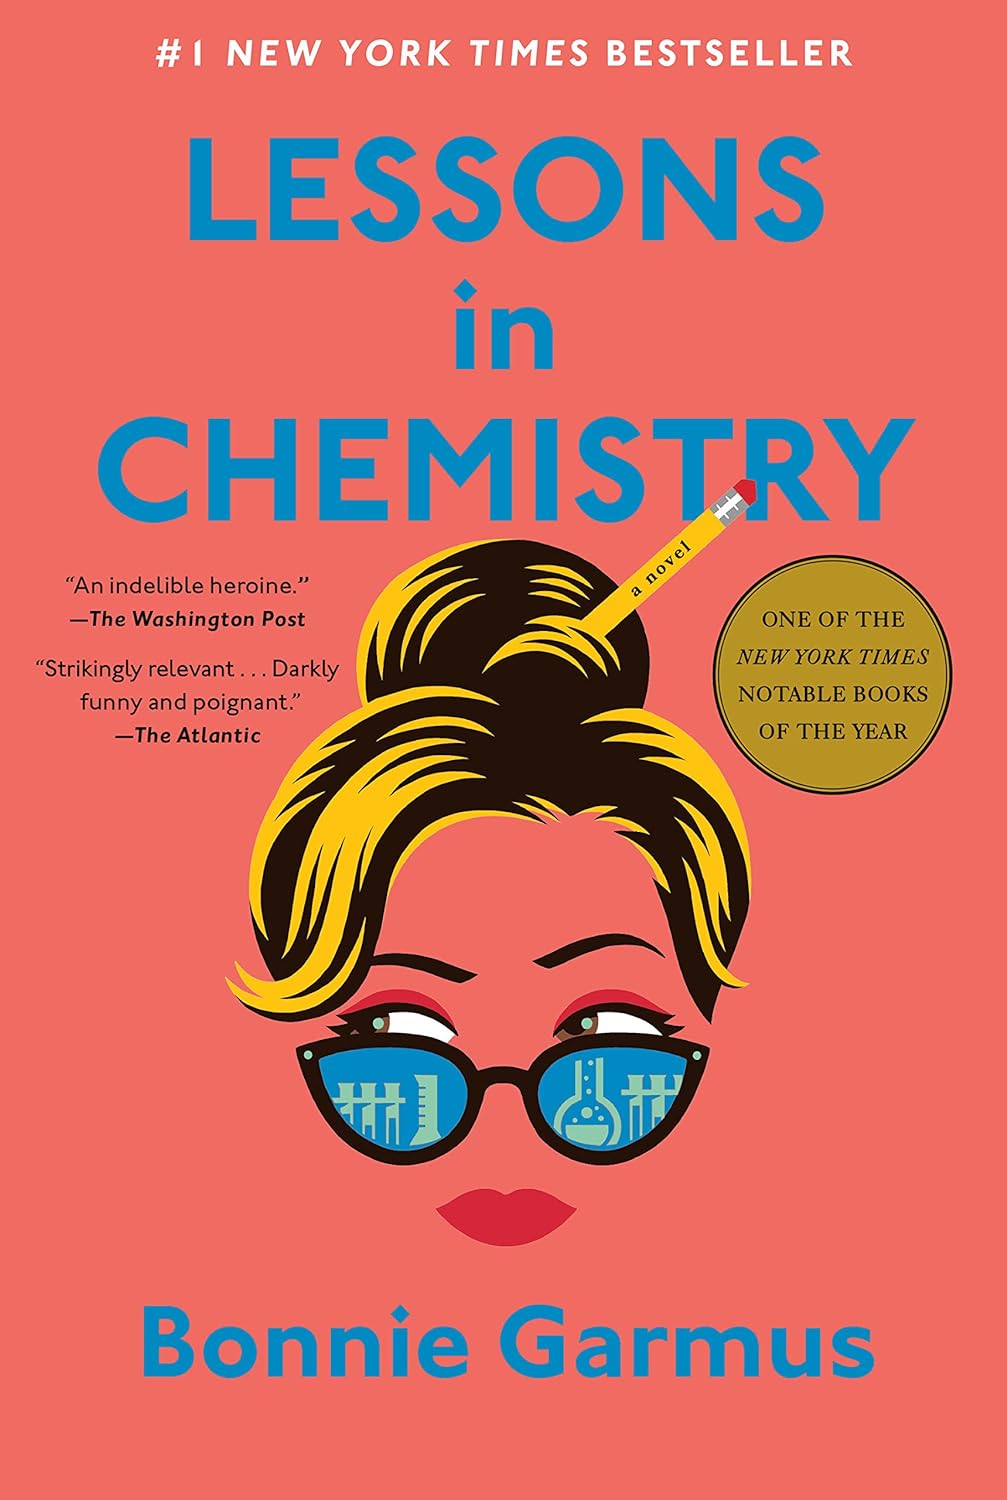 Chemieunterricht: Ein Hardcover-Roman von Bonnie Garmus